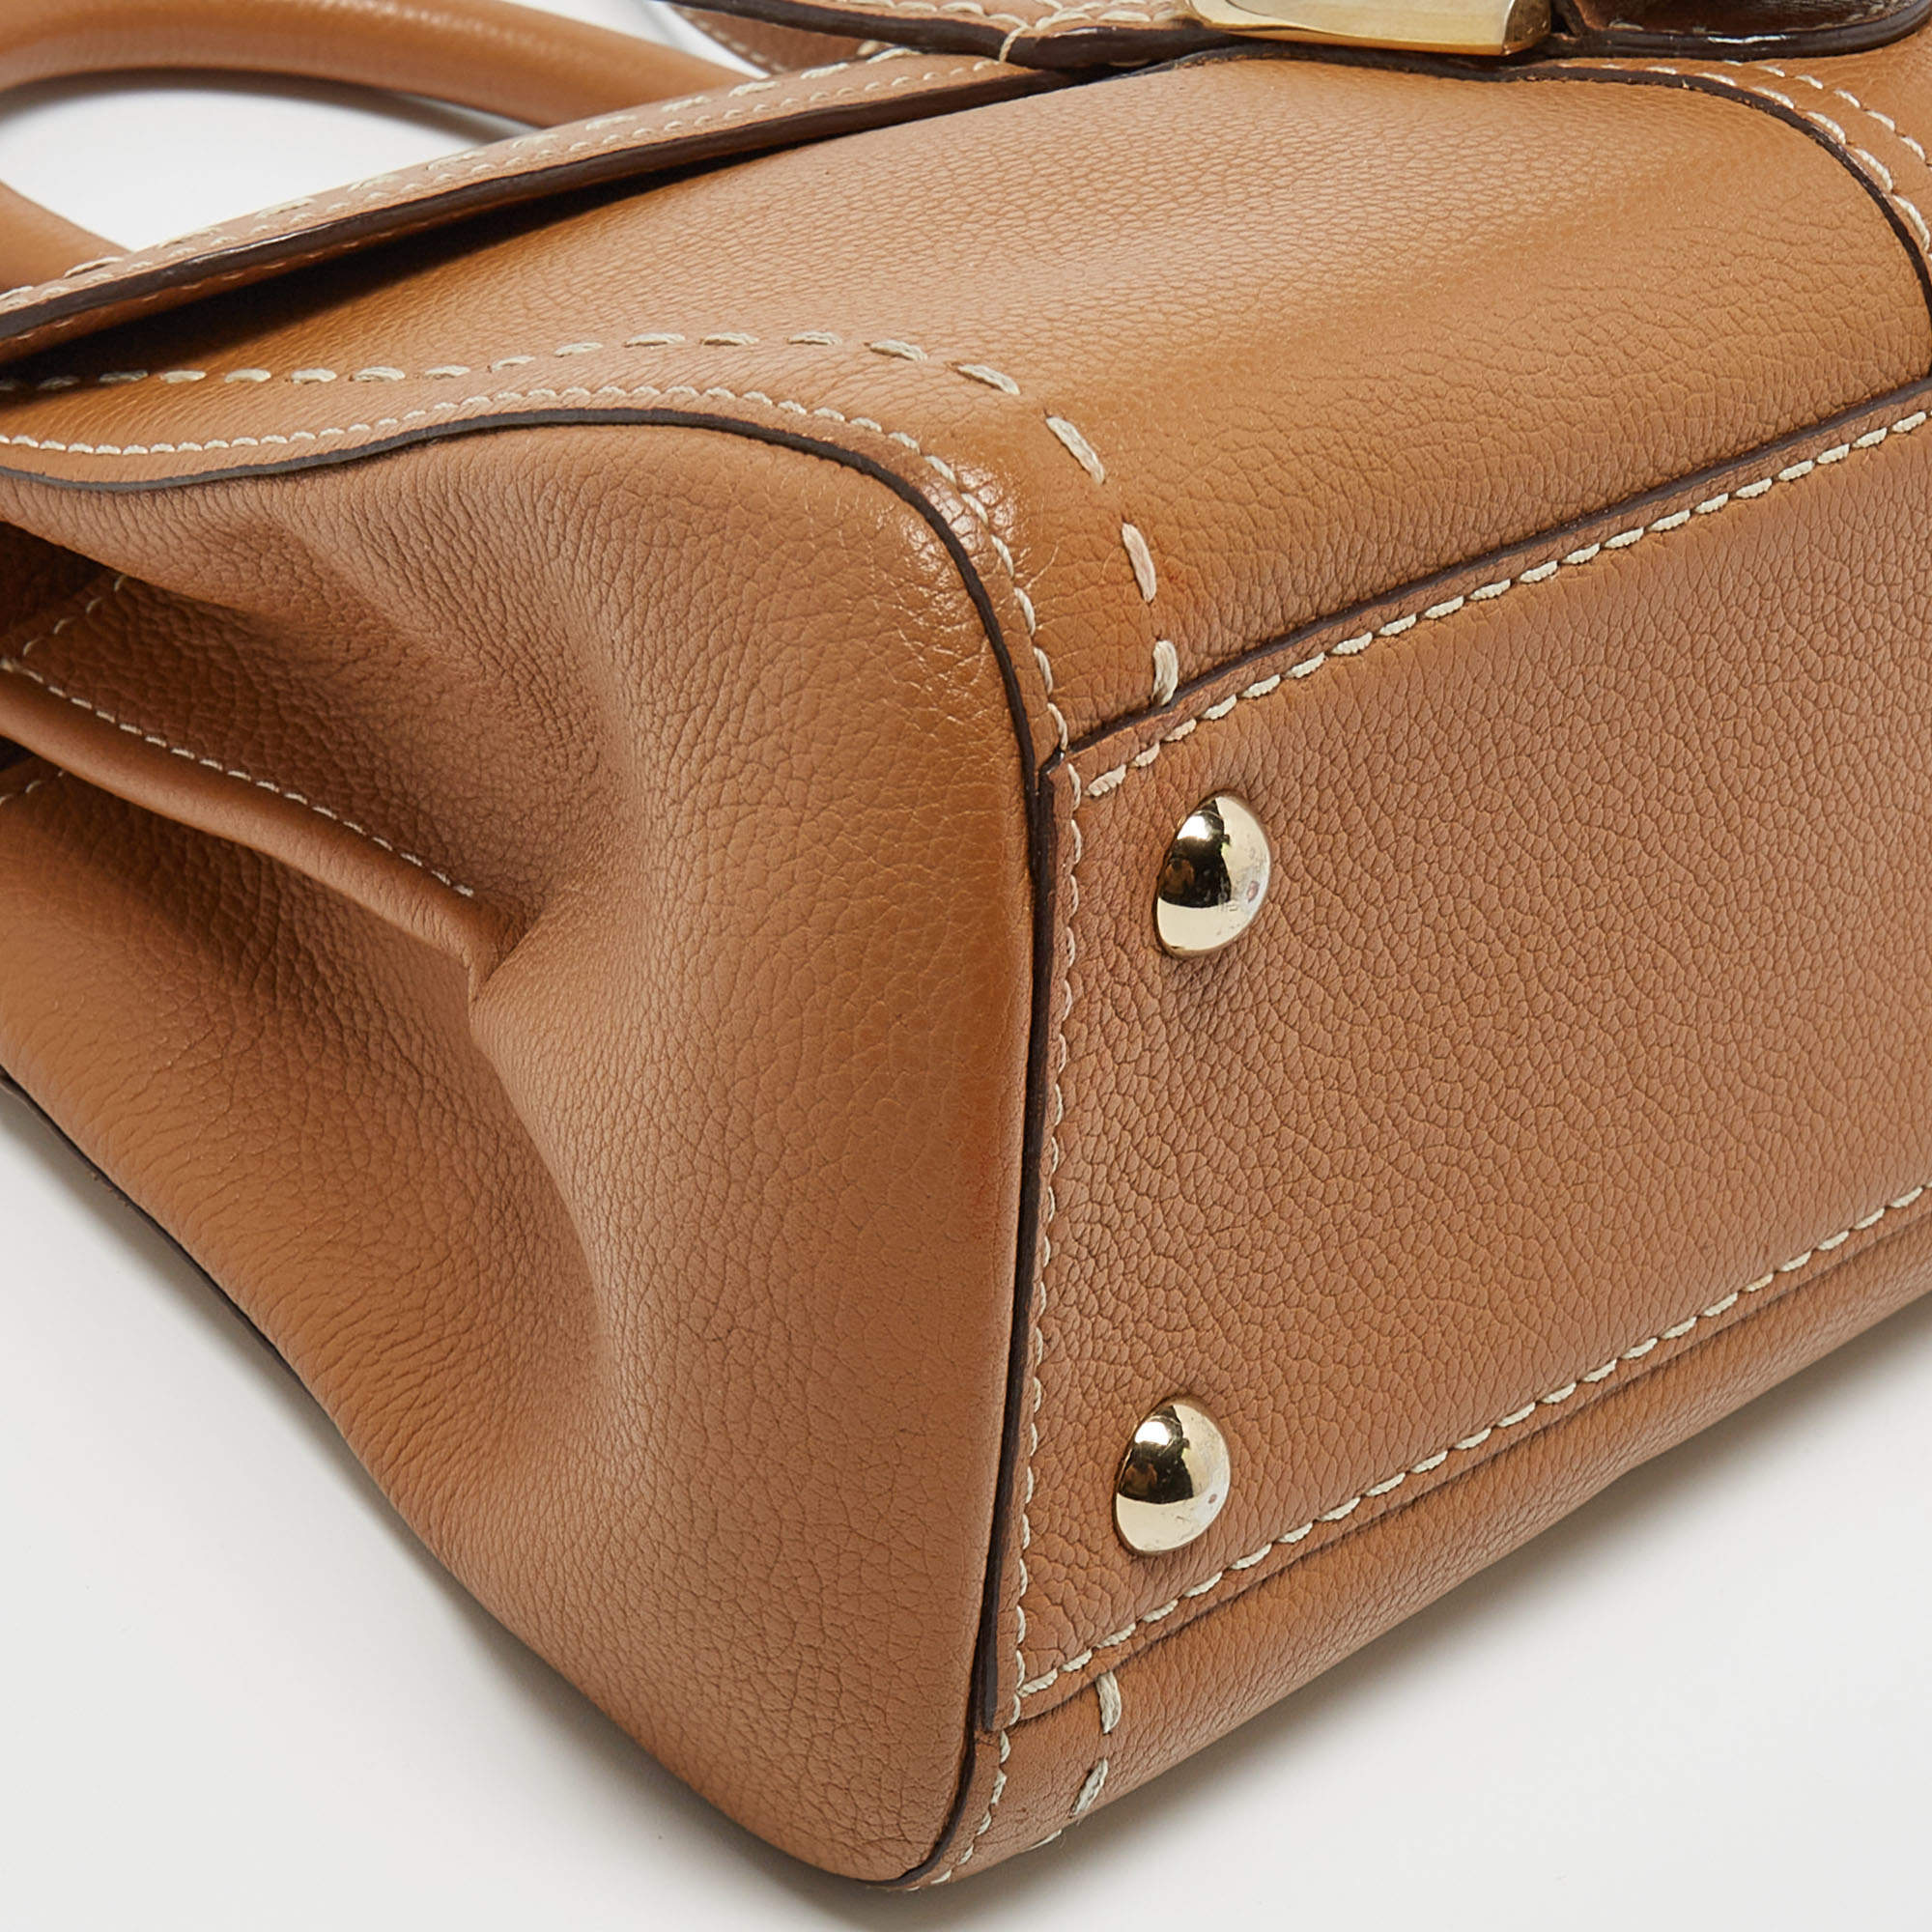 Delvaux Brillant East/West Mini Surpiqué - Brown Handle Bags